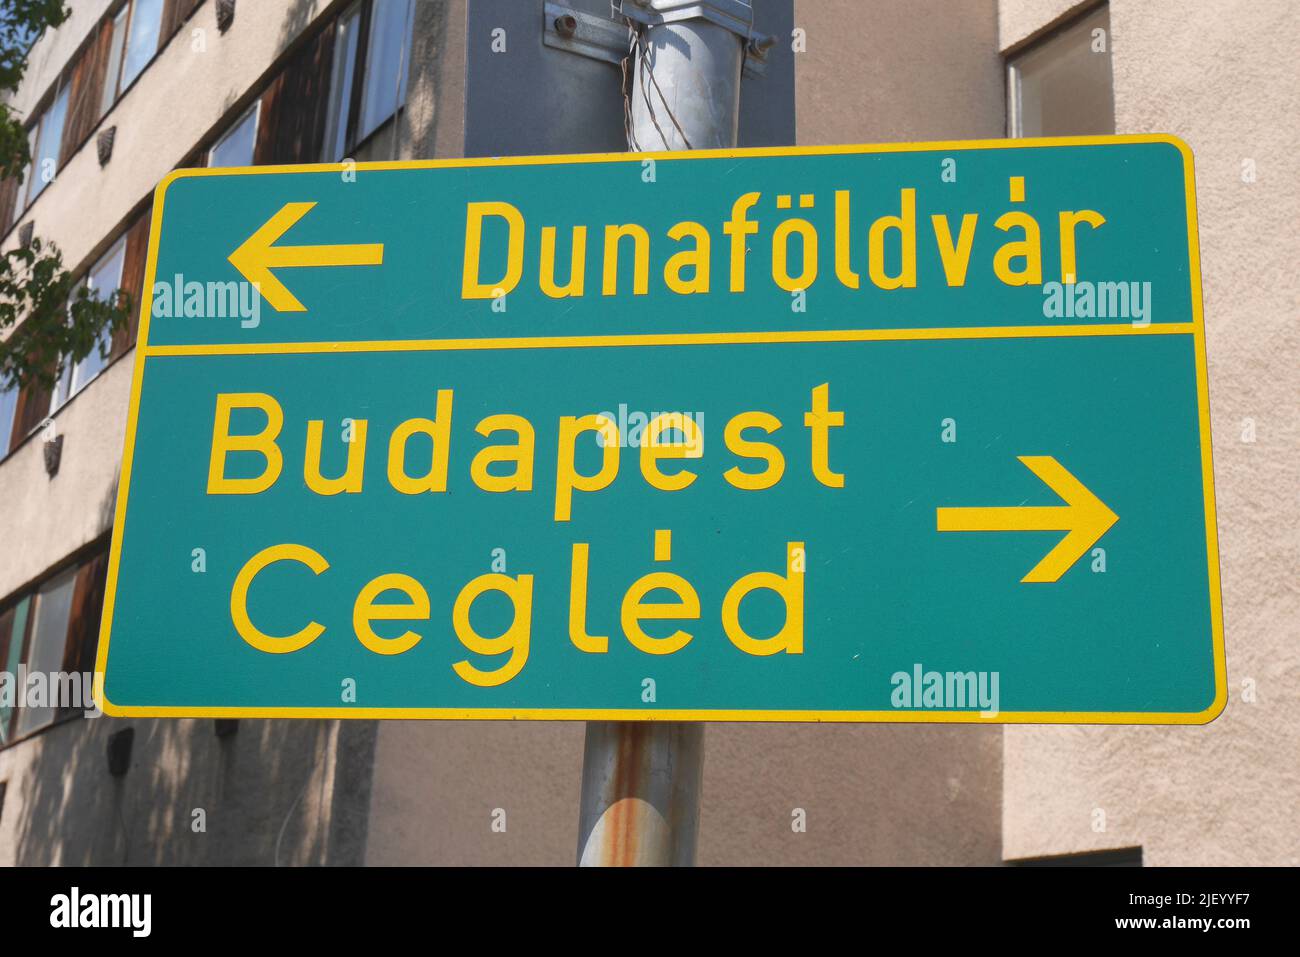 Panneau indiquant Dunafoldvar, Budapest et Cegled, Kecskemet, Hongrie Banque D'Images